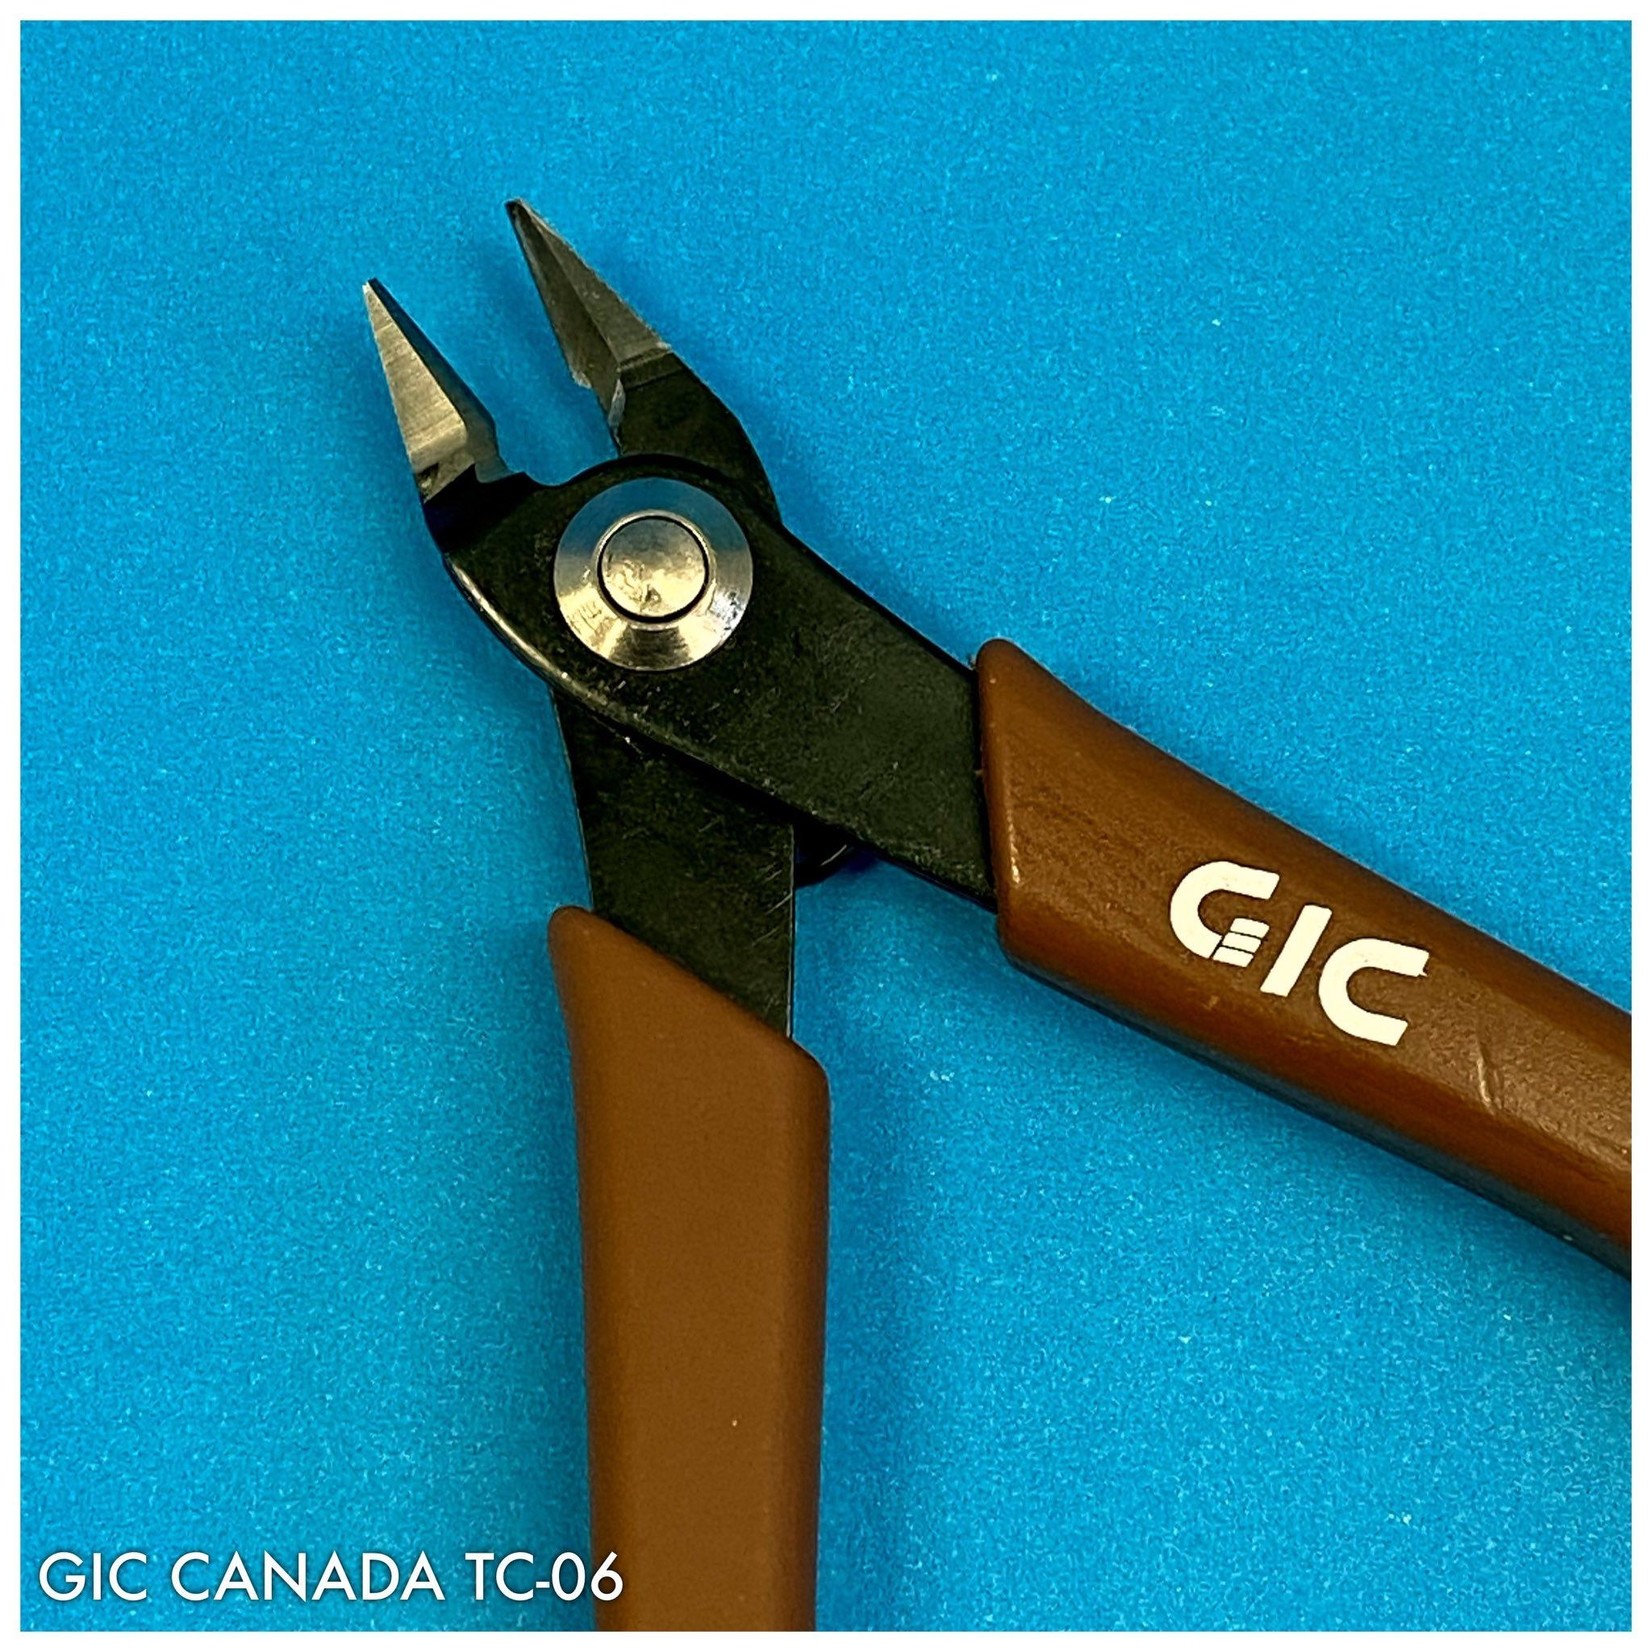 GIC GIC TC-06 TIGER PAW 120 PLASTIC SPRUE CUTTER SIDE CUTTER